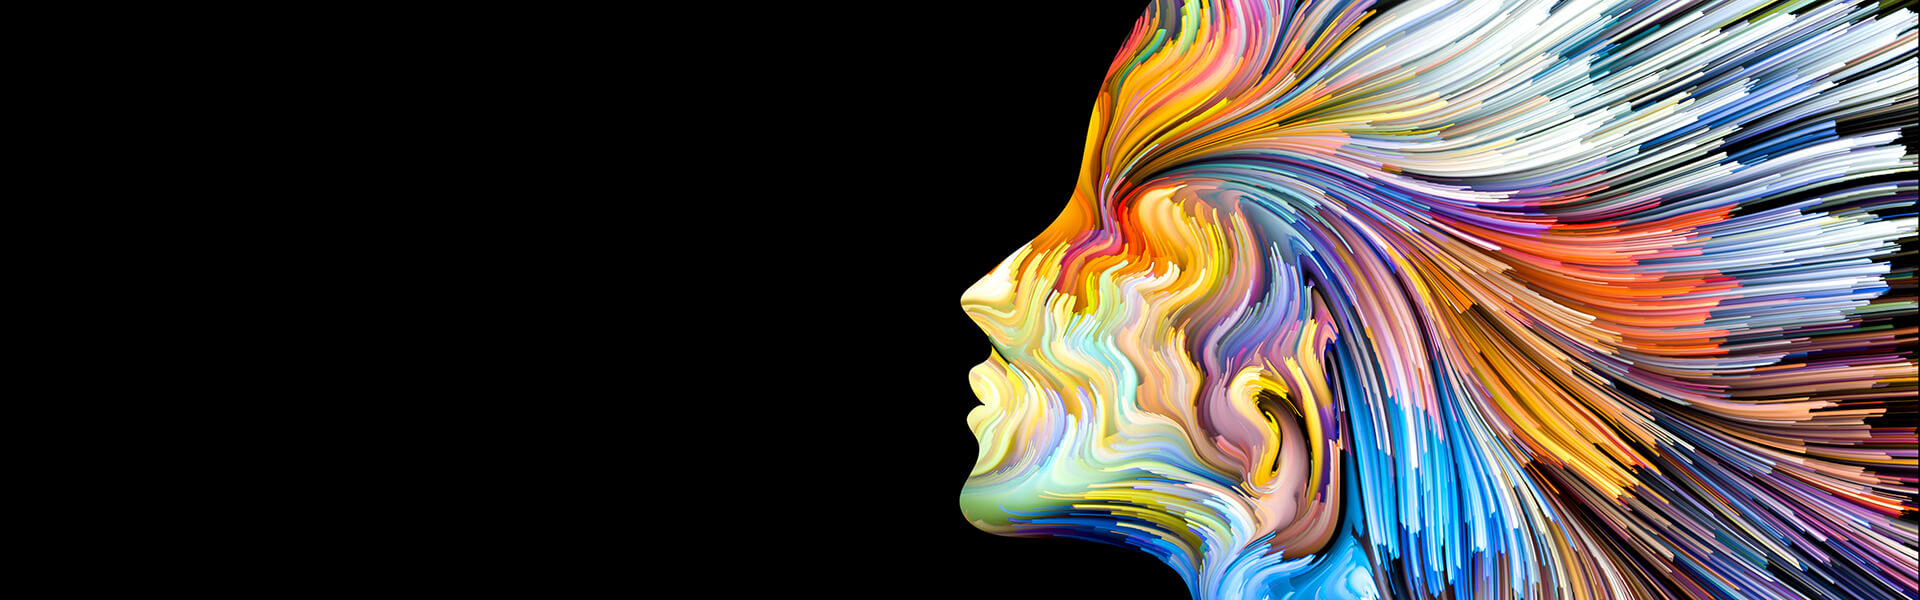 10 χρώματα και τι σημαίνουν για τη ψυχολογία μας